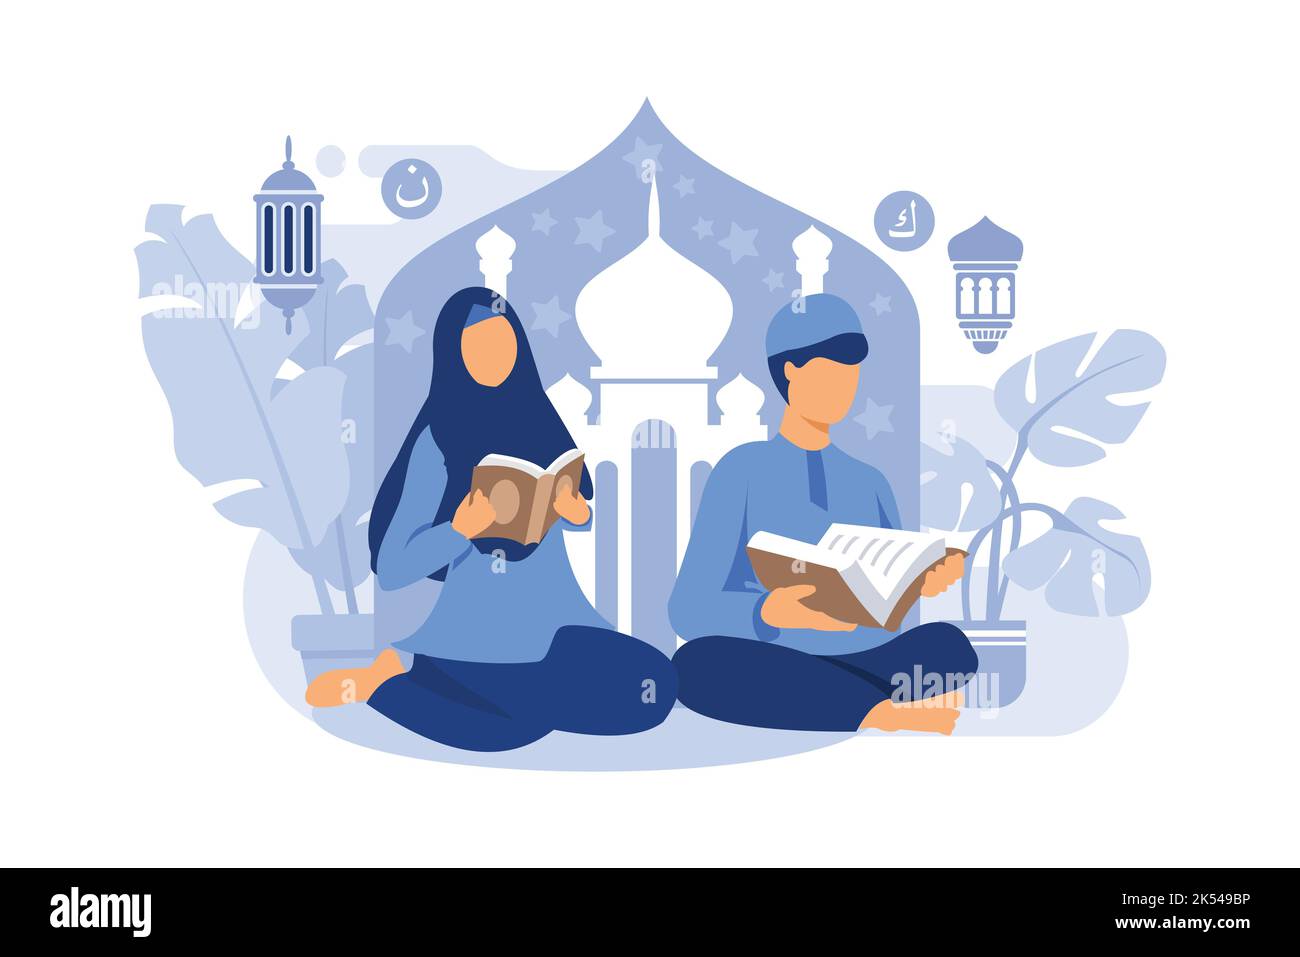 Happy ramadan mubarak Grußkonzept mit Menschen Charakter für Web-Landing-Page-Vorlage, Banner, Präsentation, soziale und Printmedien. islamische eid Stock Vektor